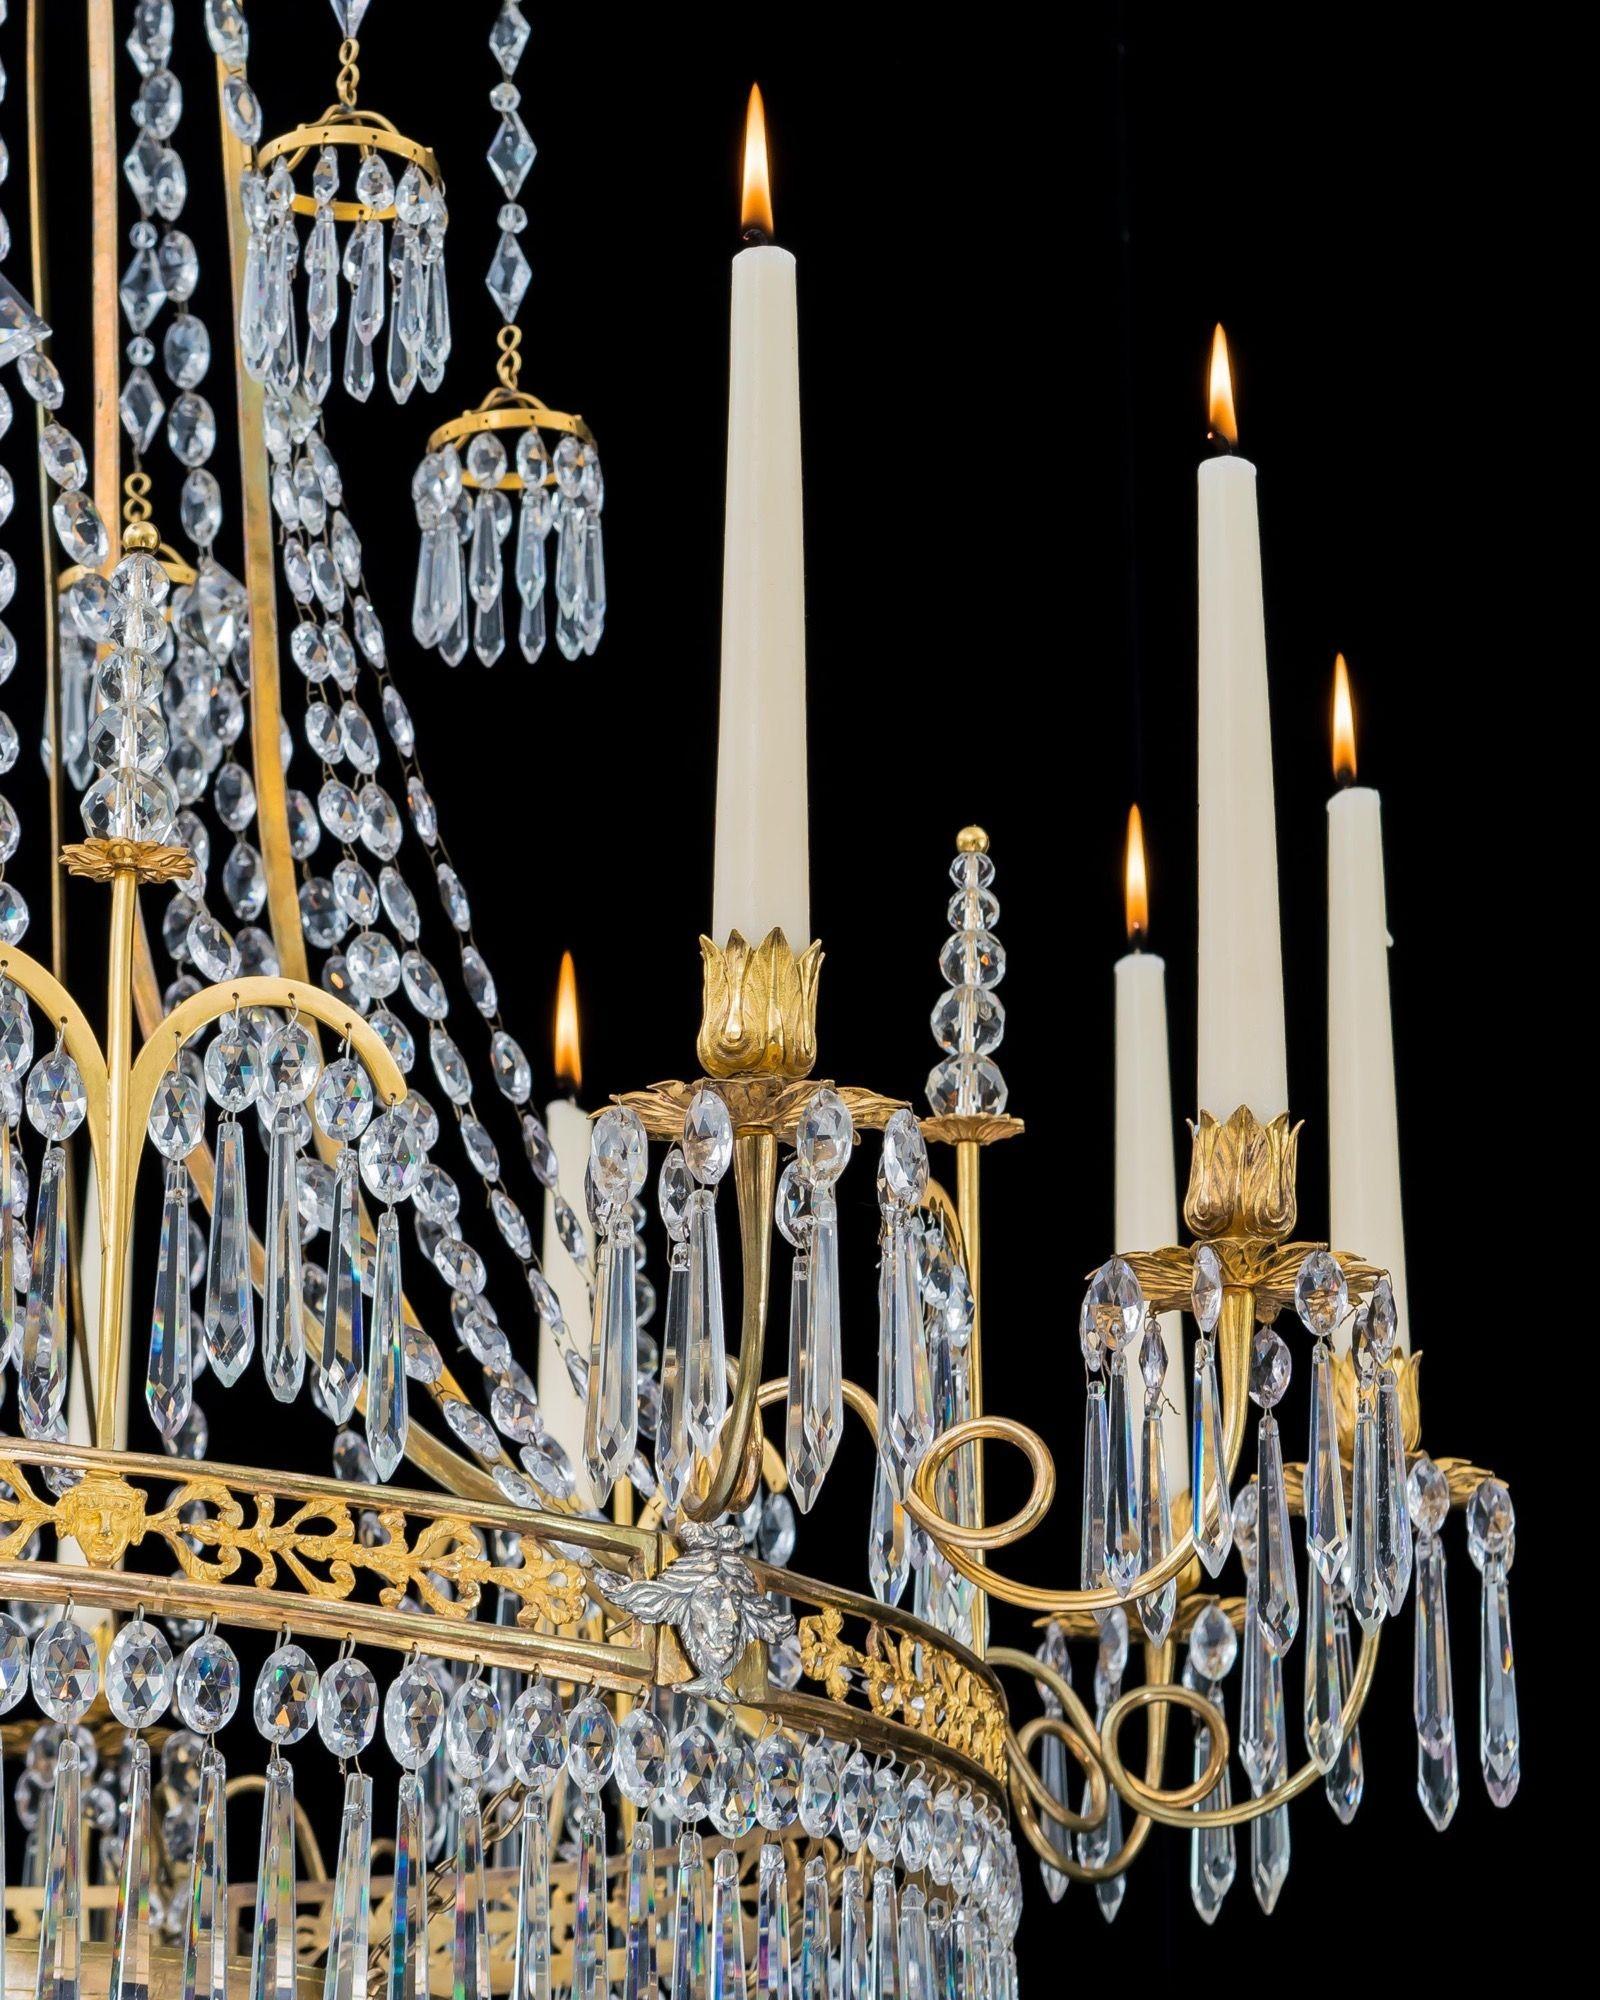 Un élégant lustre en bronze doré avec une couronne suspendue entrelacée de perles à facettes, supportant six glands en bronze doré suspendus à des chaînes de diamants. Le cadre principal orné, monté avec des mofits en argent, émet douze bras à